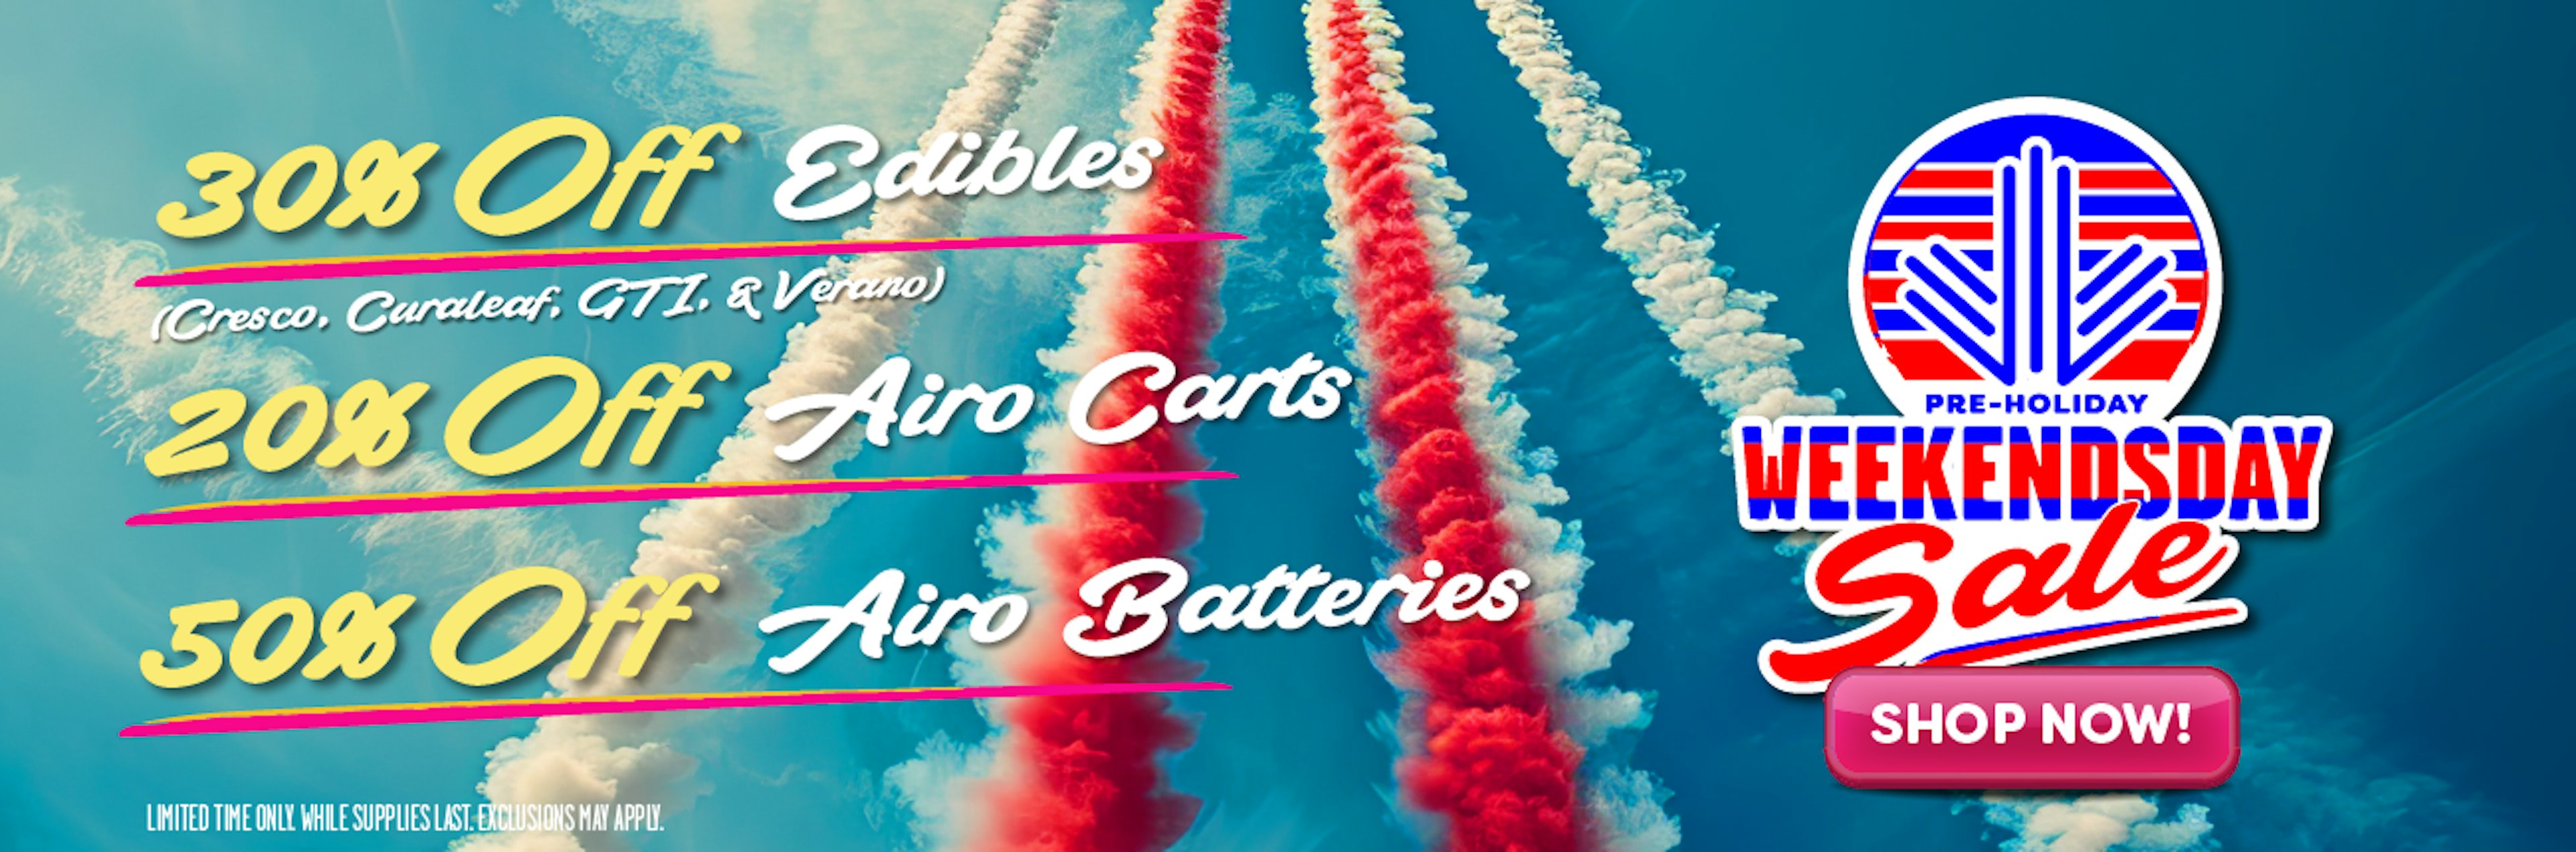 Airo/Edible Banner